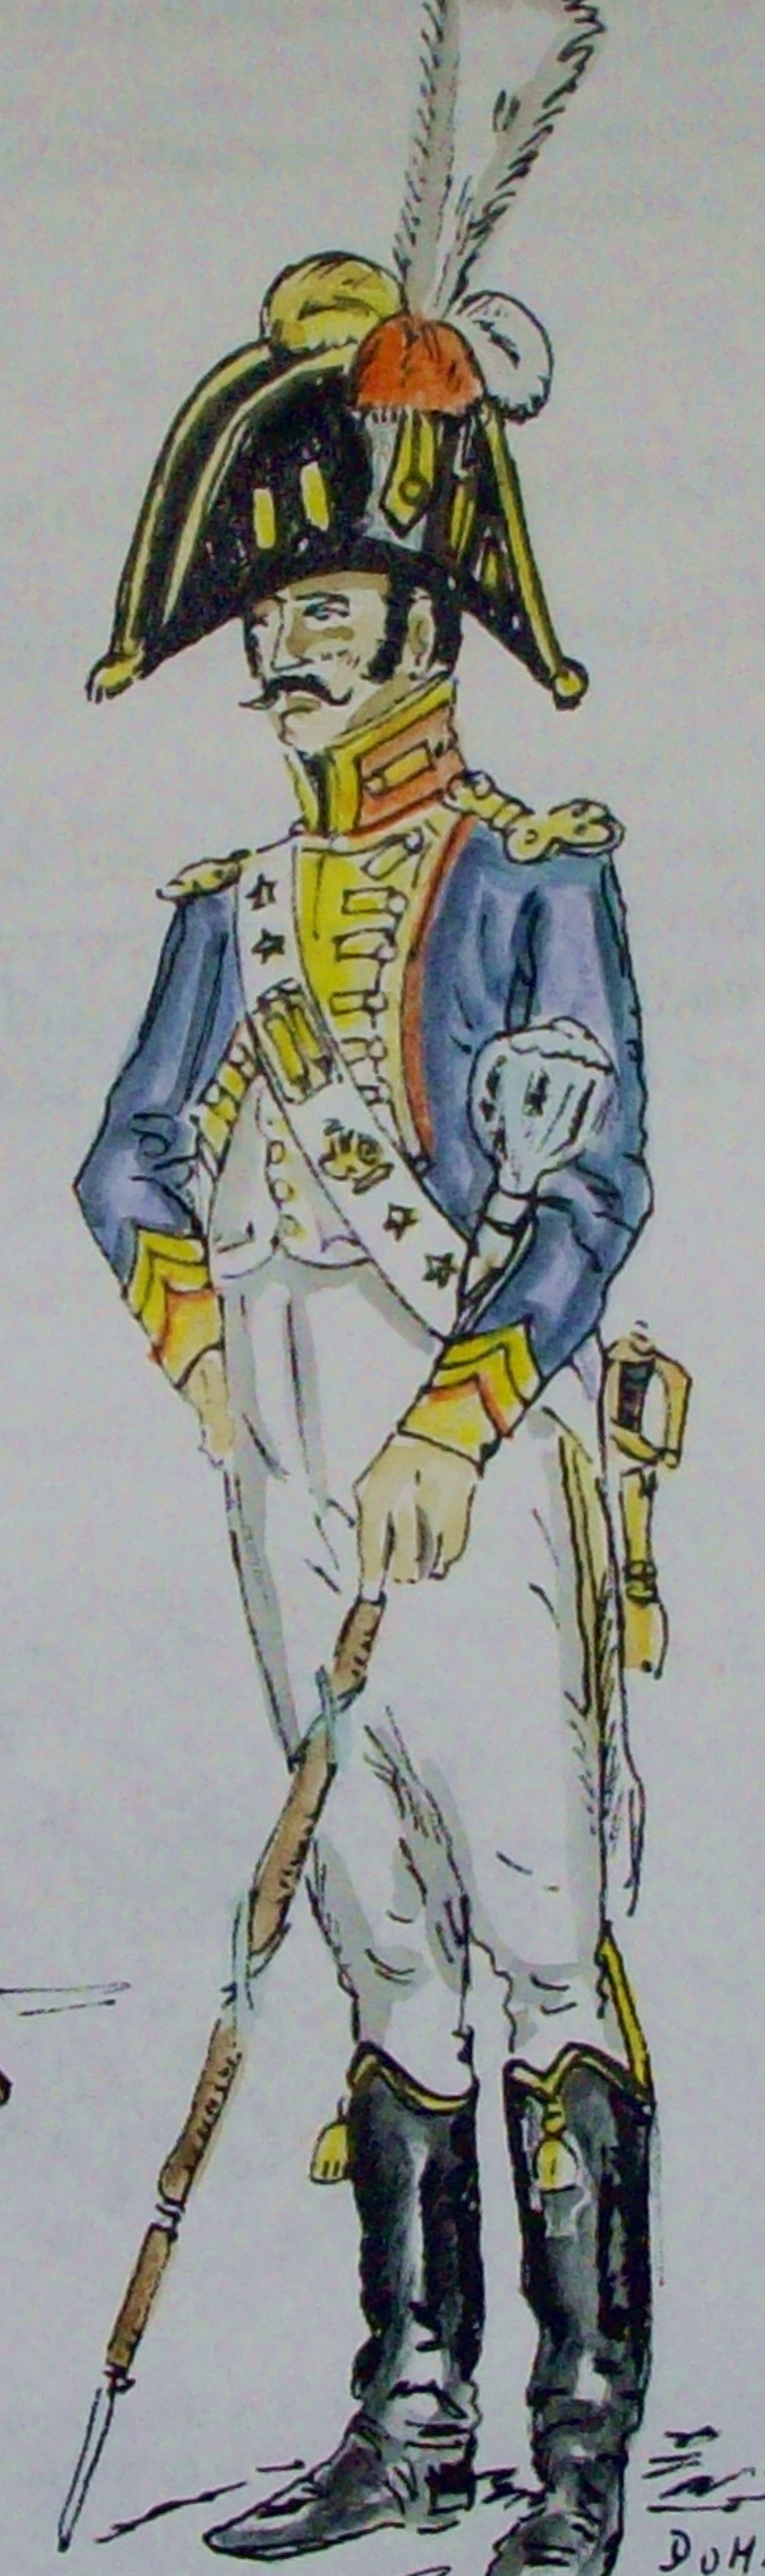 Tambour major de la Garde d'Honneur de Grenoble